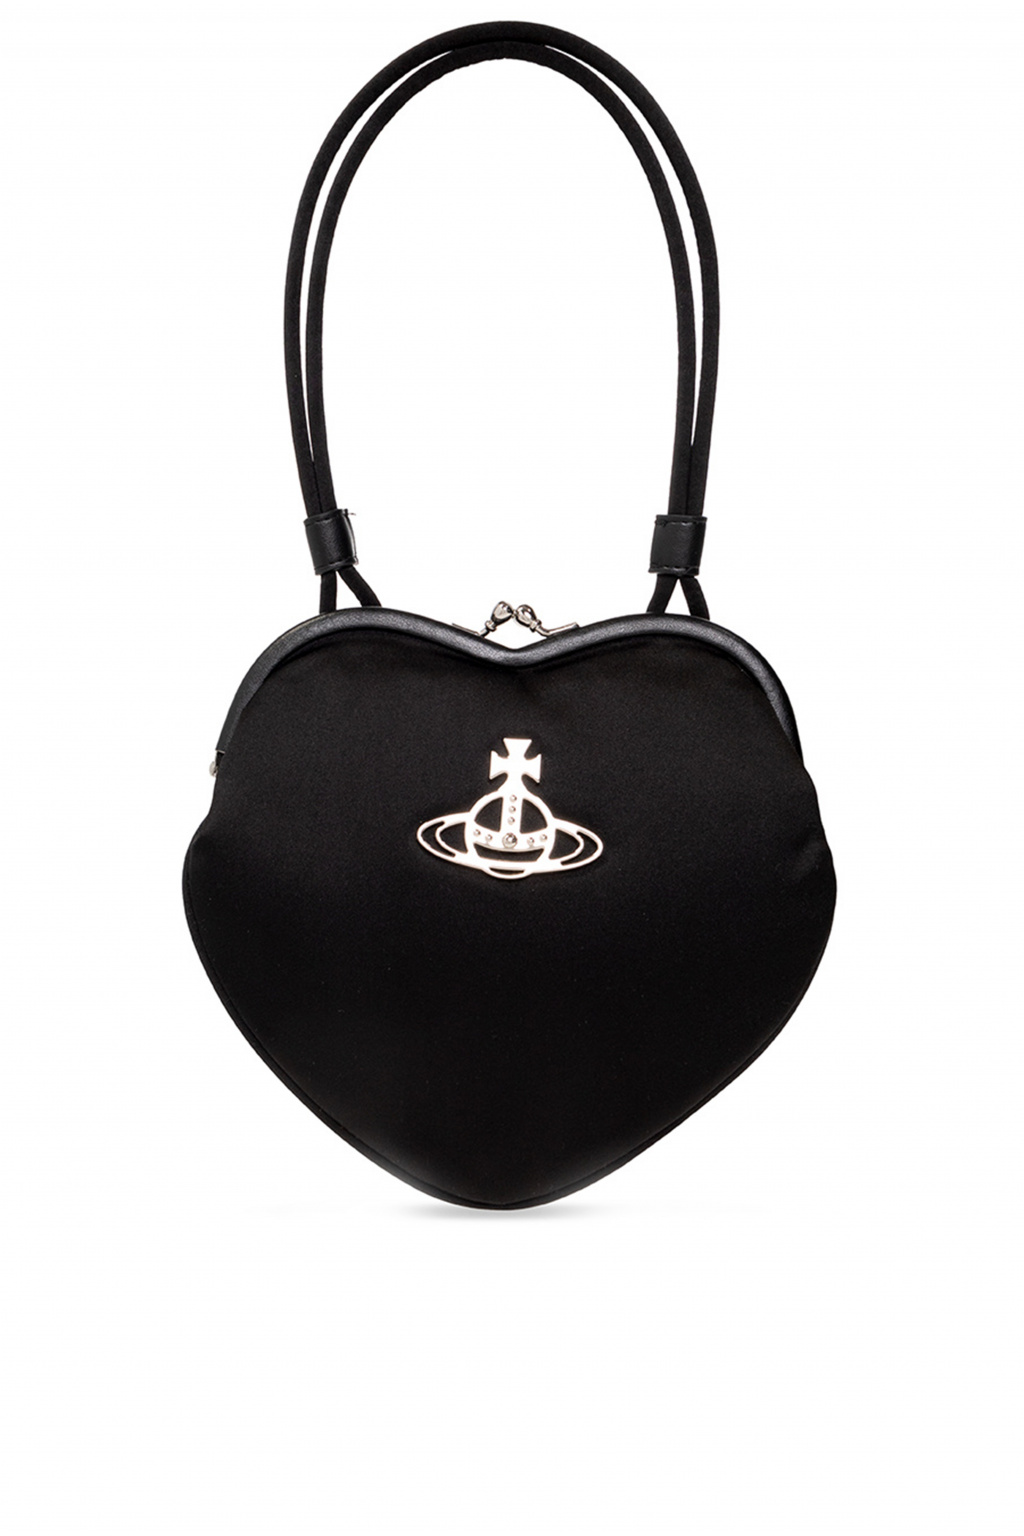 Vivienne Westwood ‘Belle’ handbag